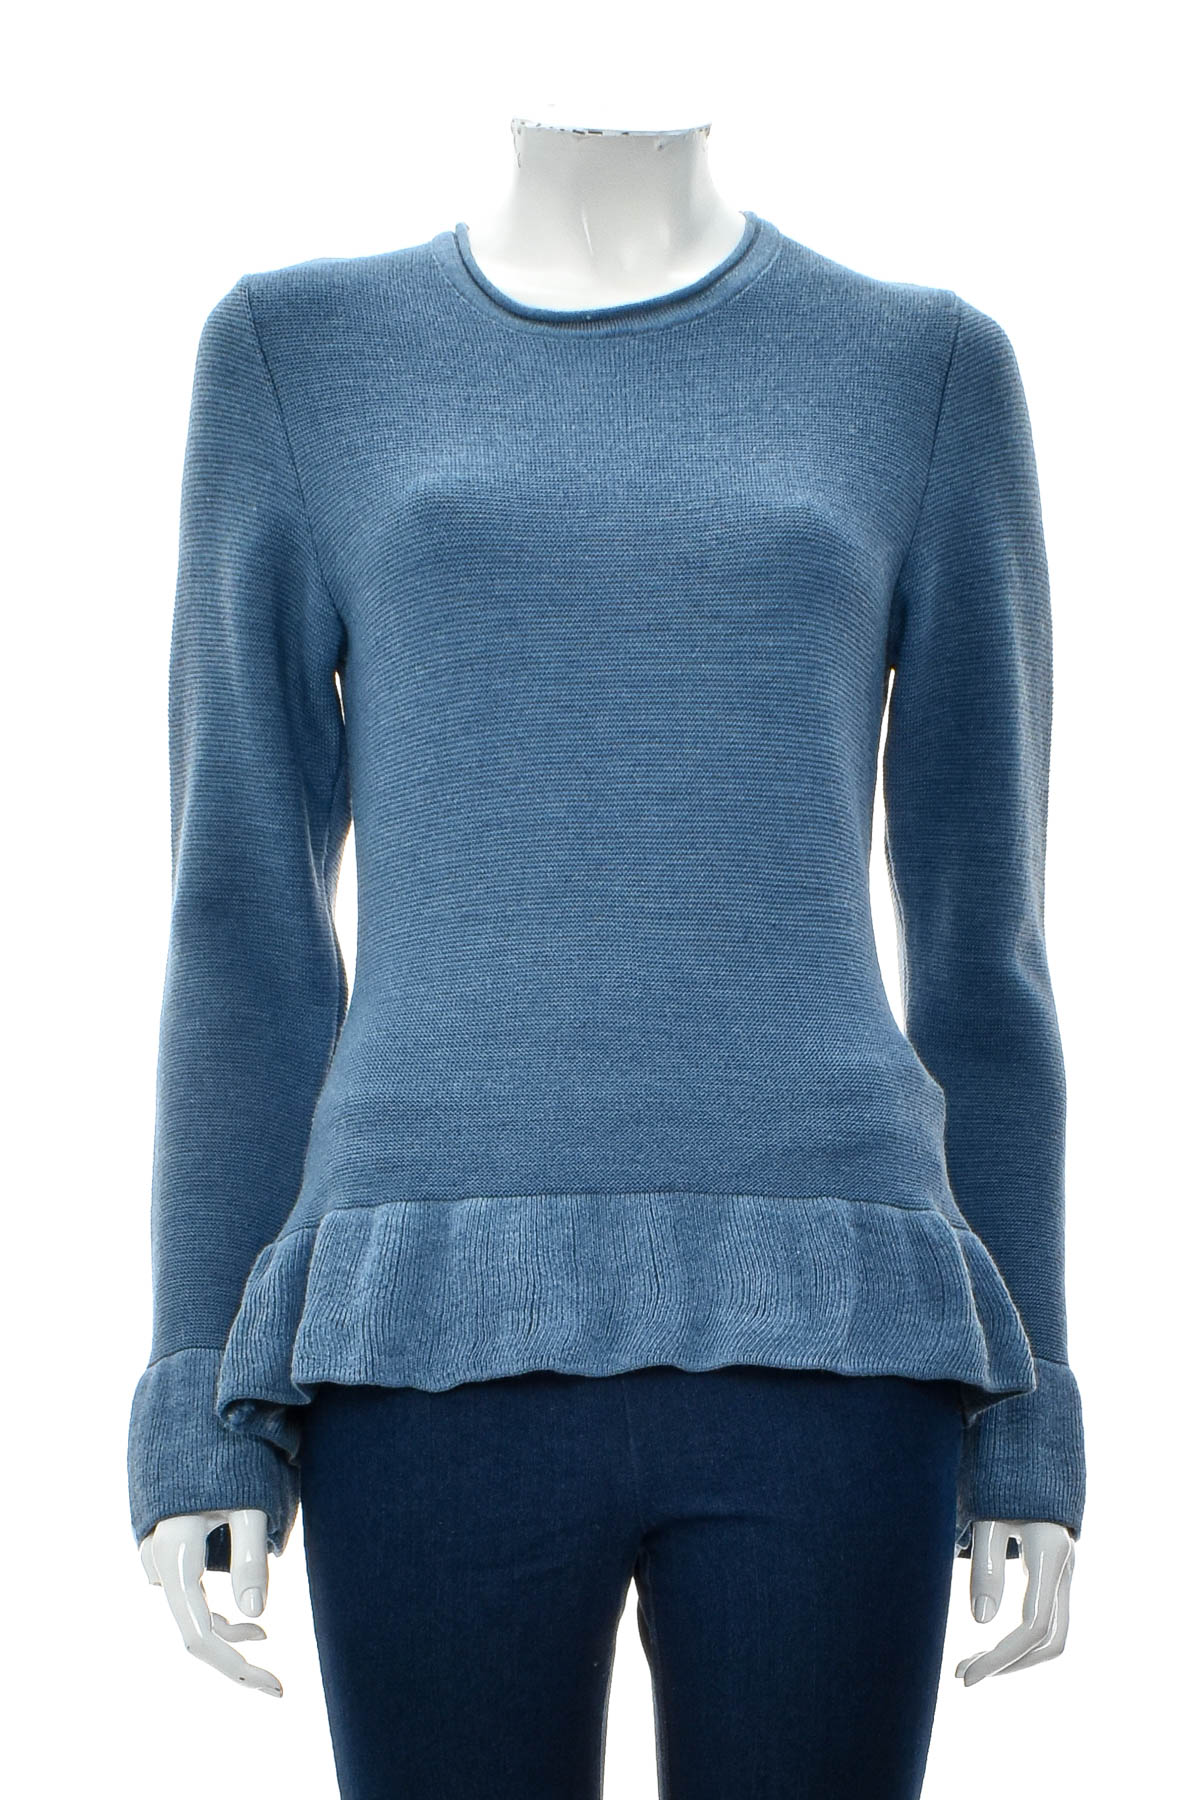 Women's sweater - Huber Mode & Tracht - 0